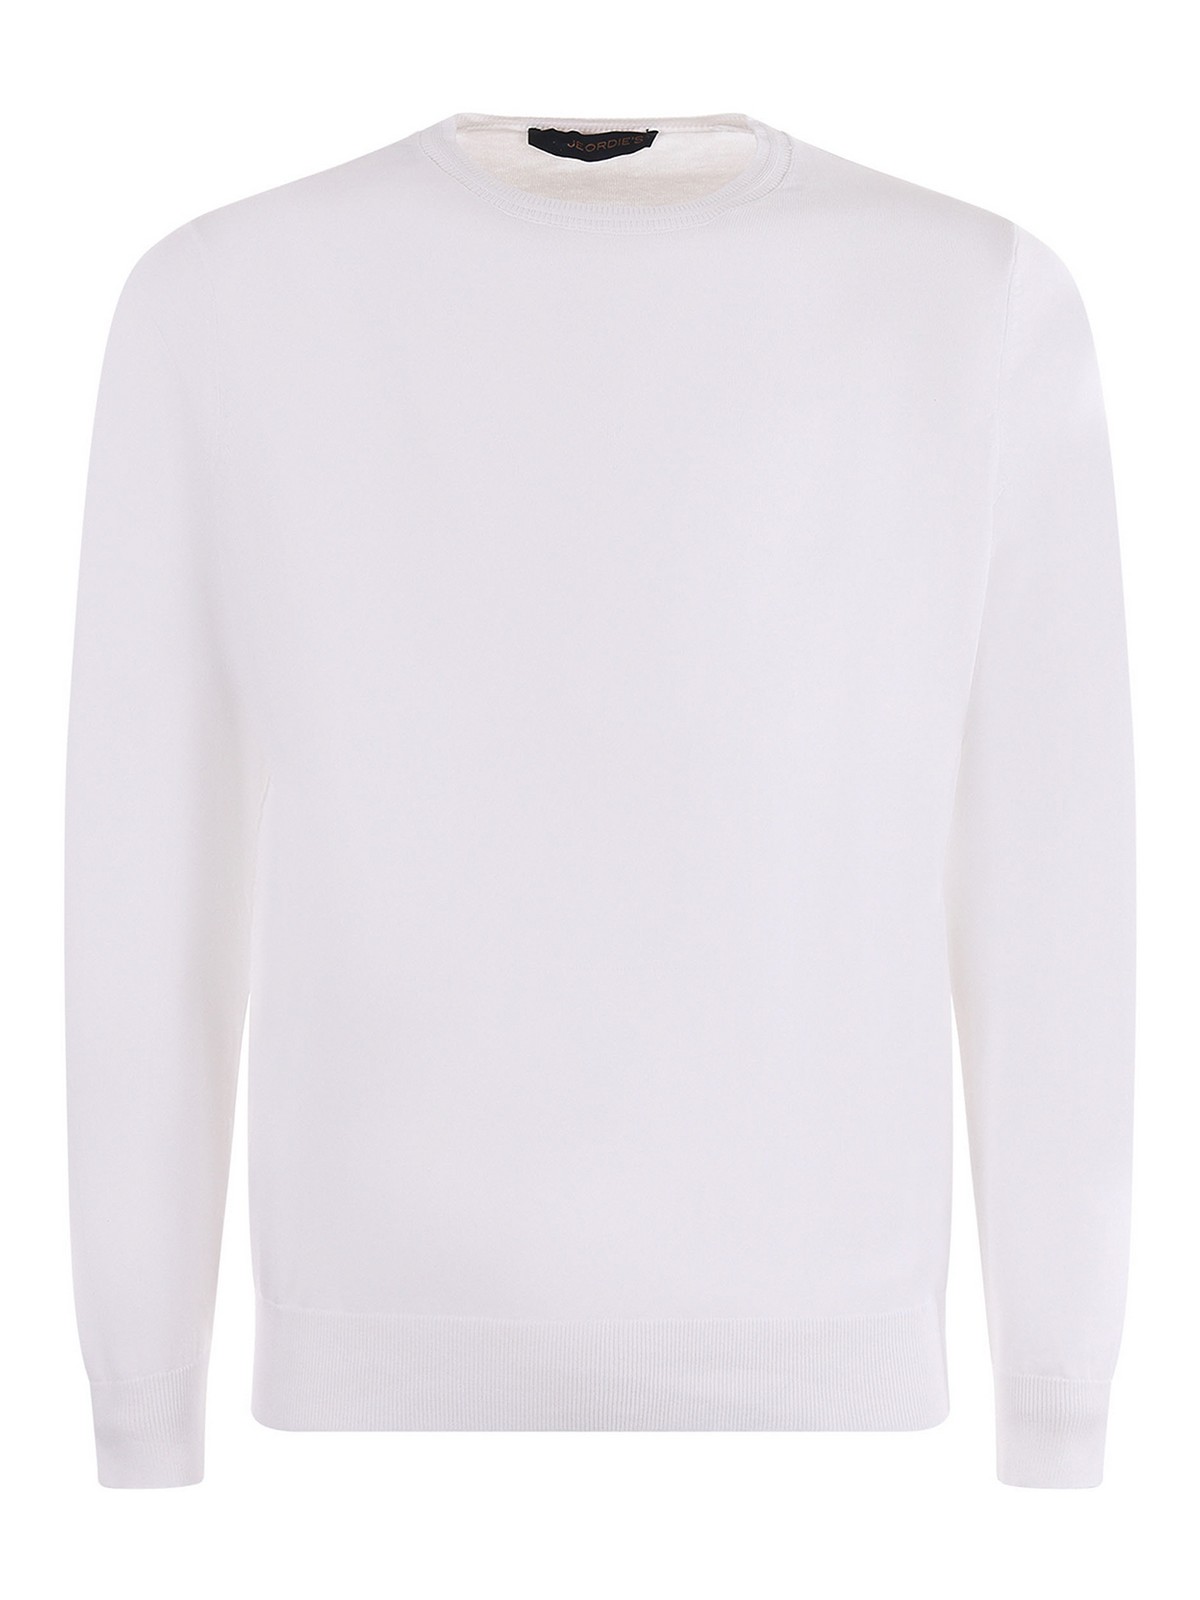 Jeordie's Jeordies Sweater In White